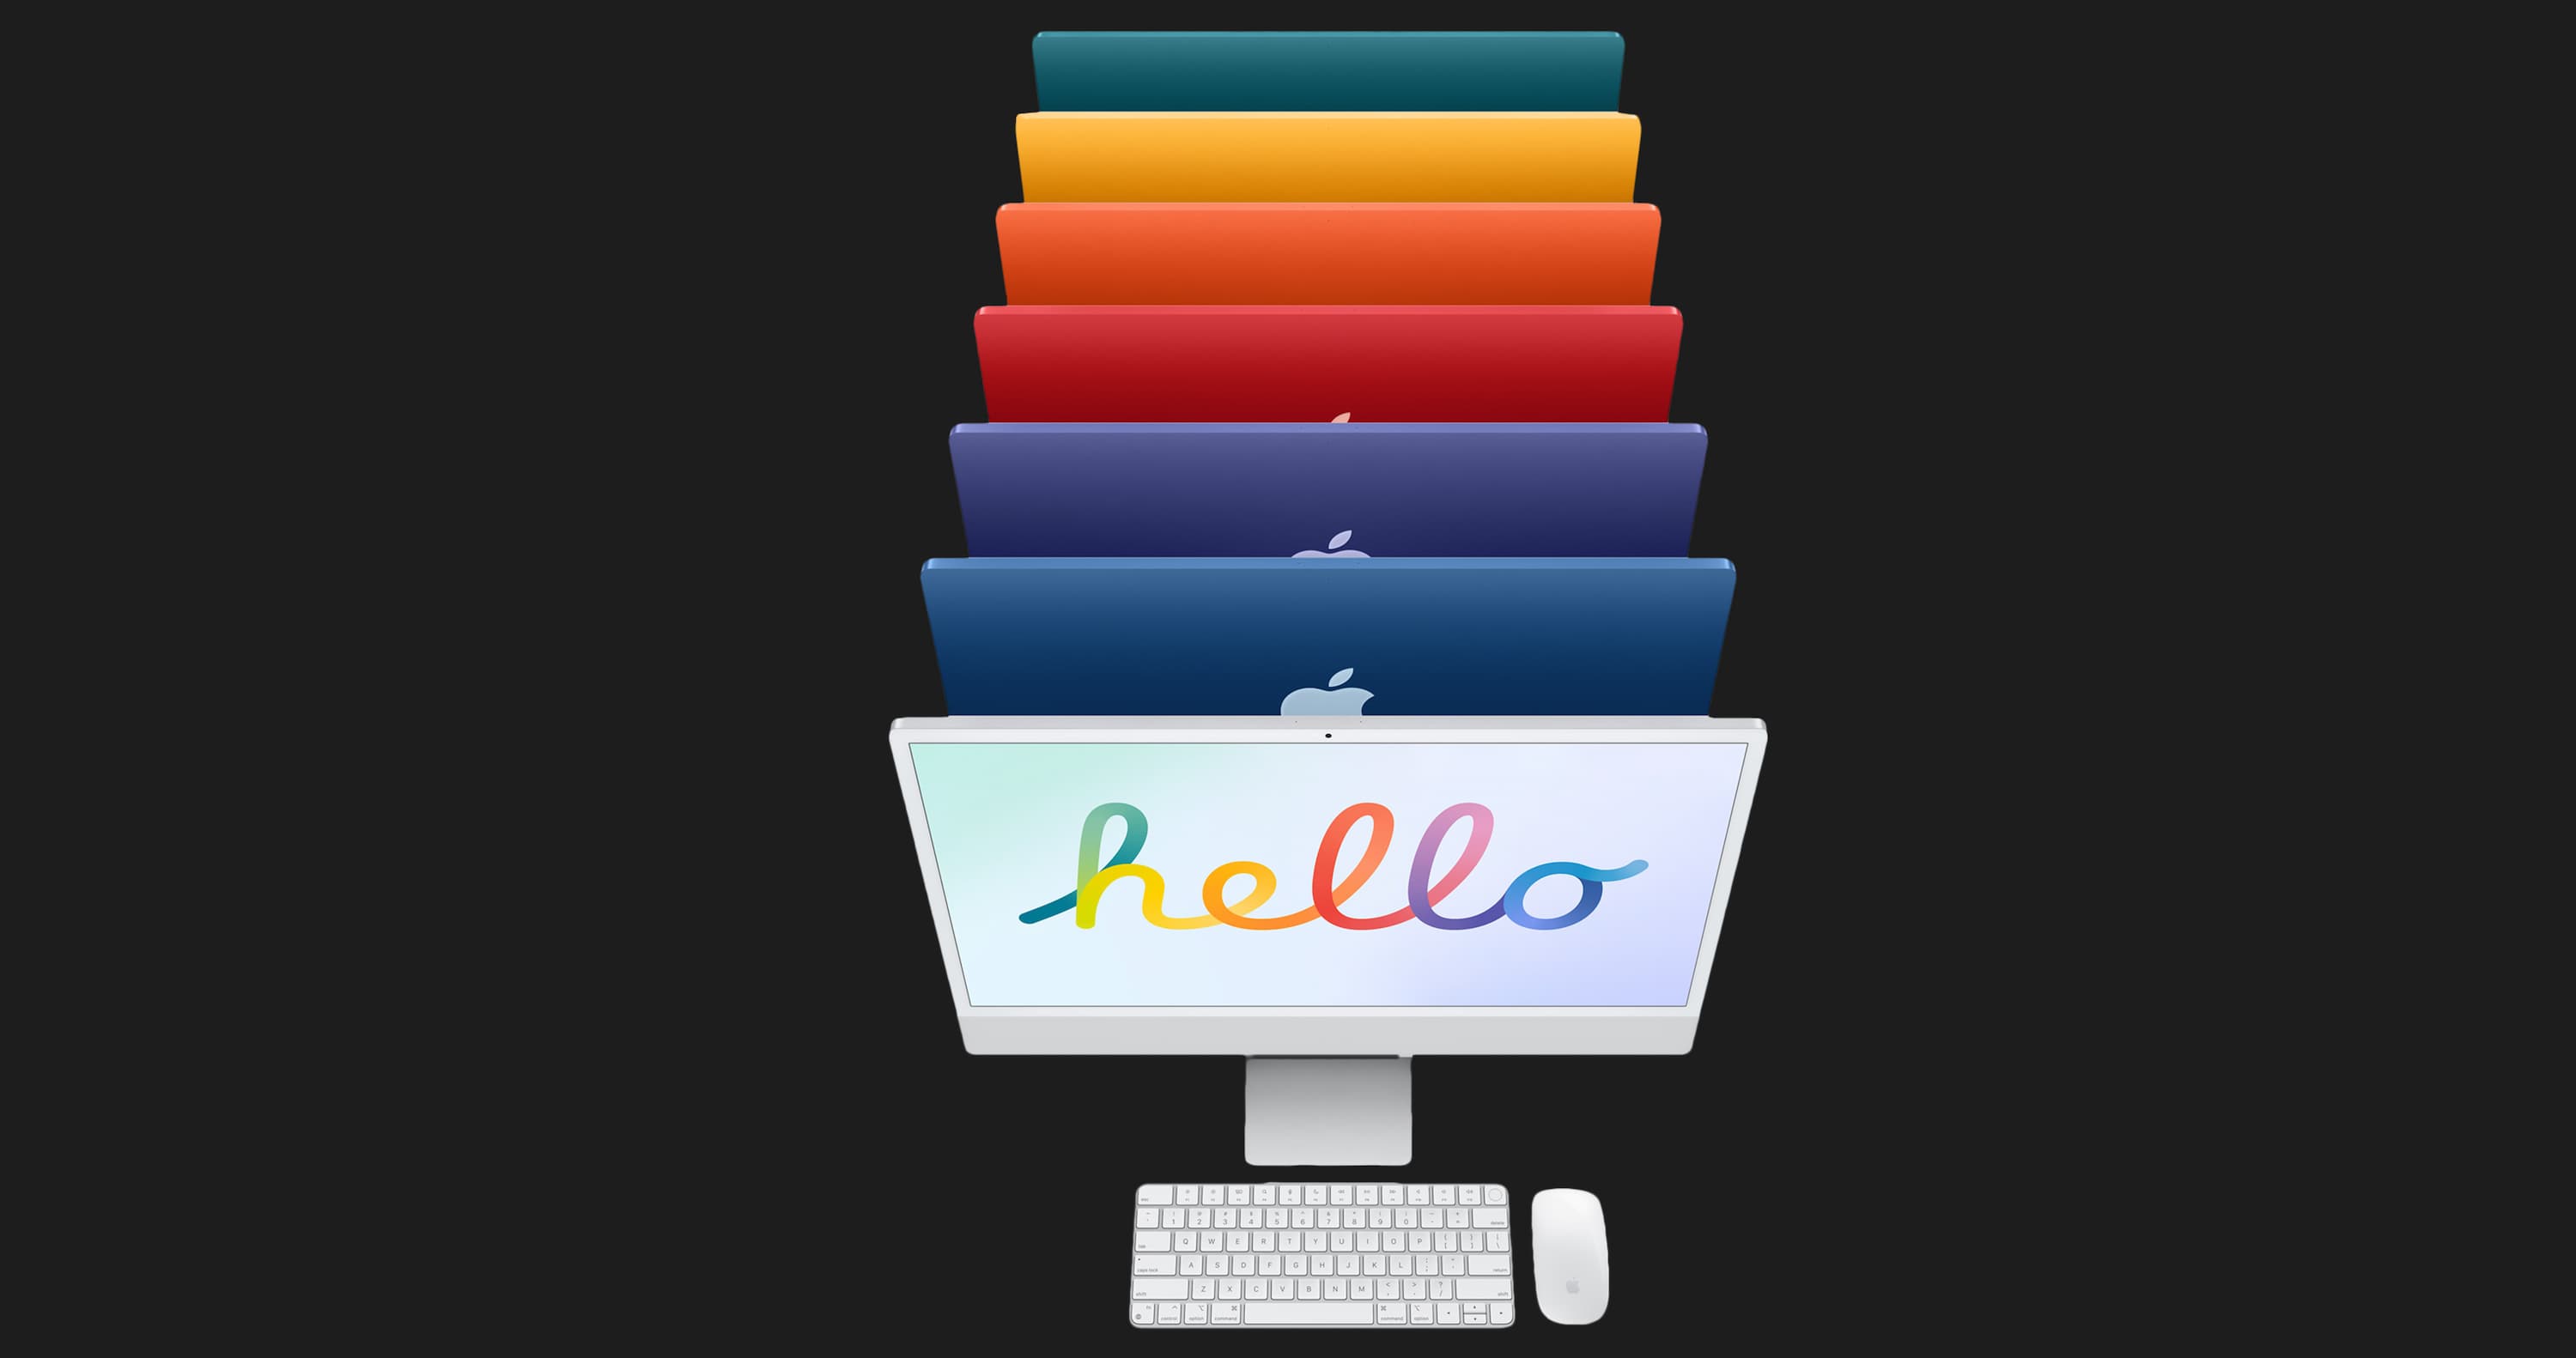 Apple iMac 24 with Retina 4.5K, 512GB, 8 CPU / 8 GPU (Orange) (Z133000LU)